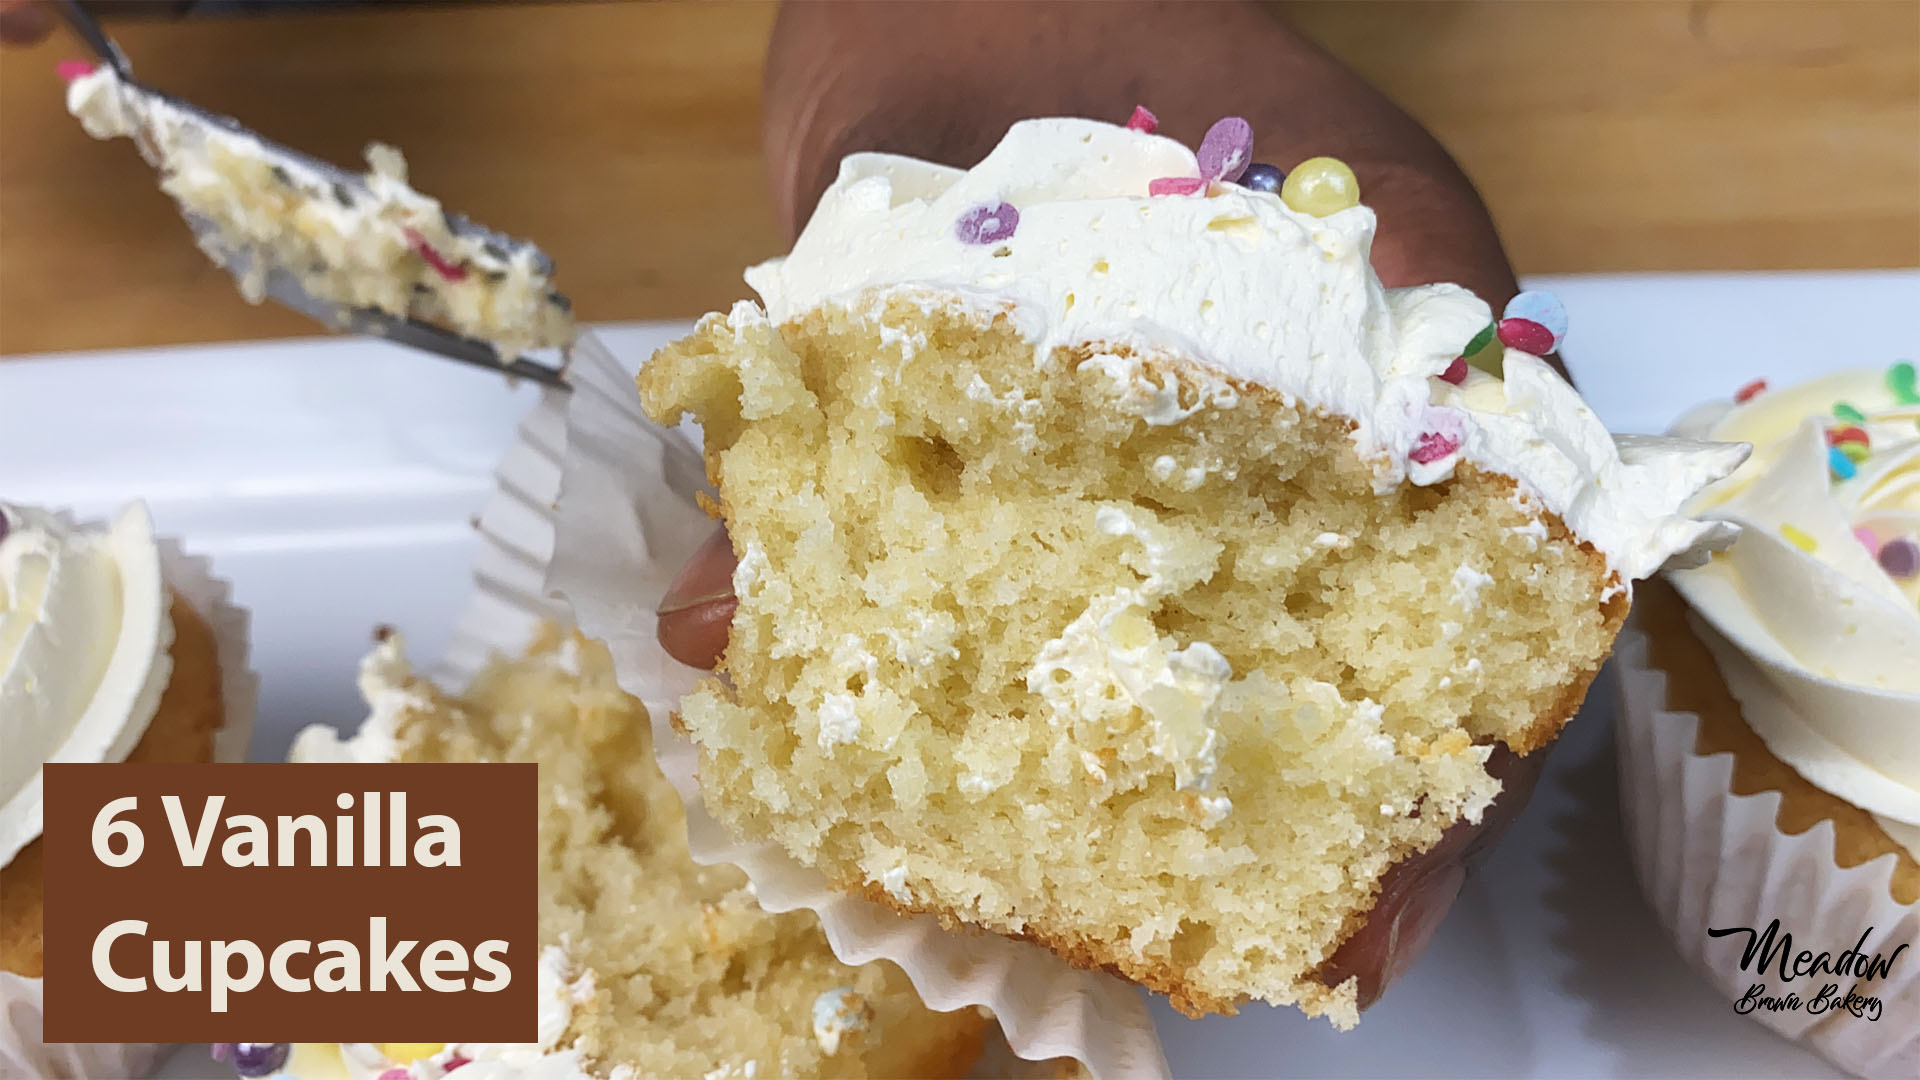 6 vanilla cupcakes recipe